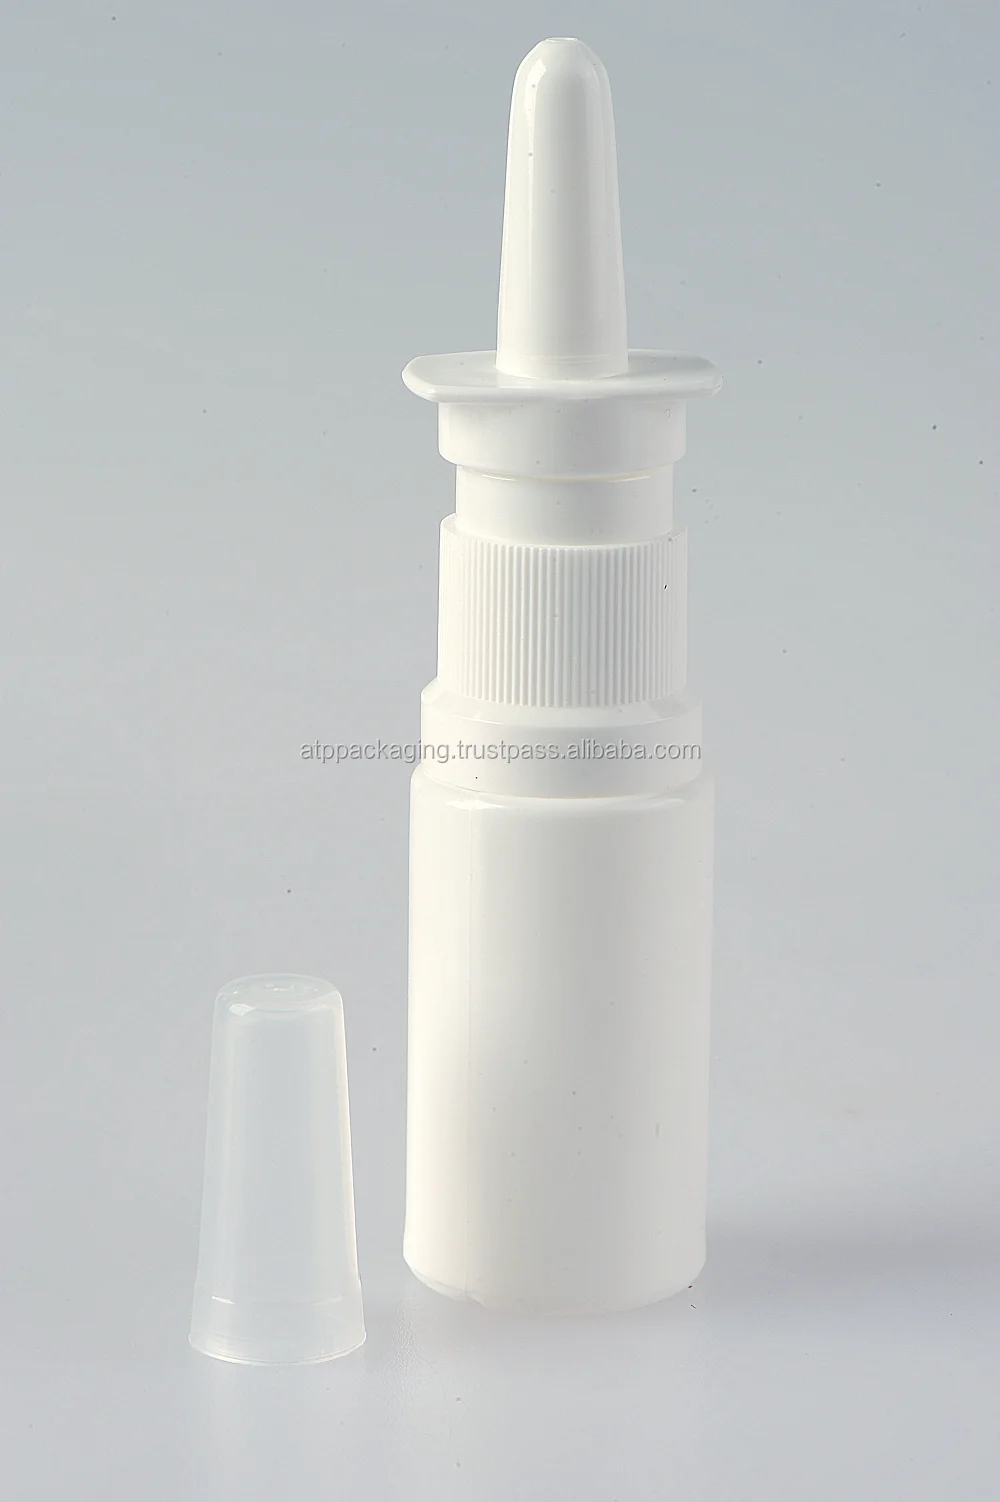 製造プラスチック白15ミリリットル鼻スプレーボトル Buy プラスチック製スプレーボトル スプレープラスチックボトル 鼻スプレーポンプボトル Product On Alibaba Com